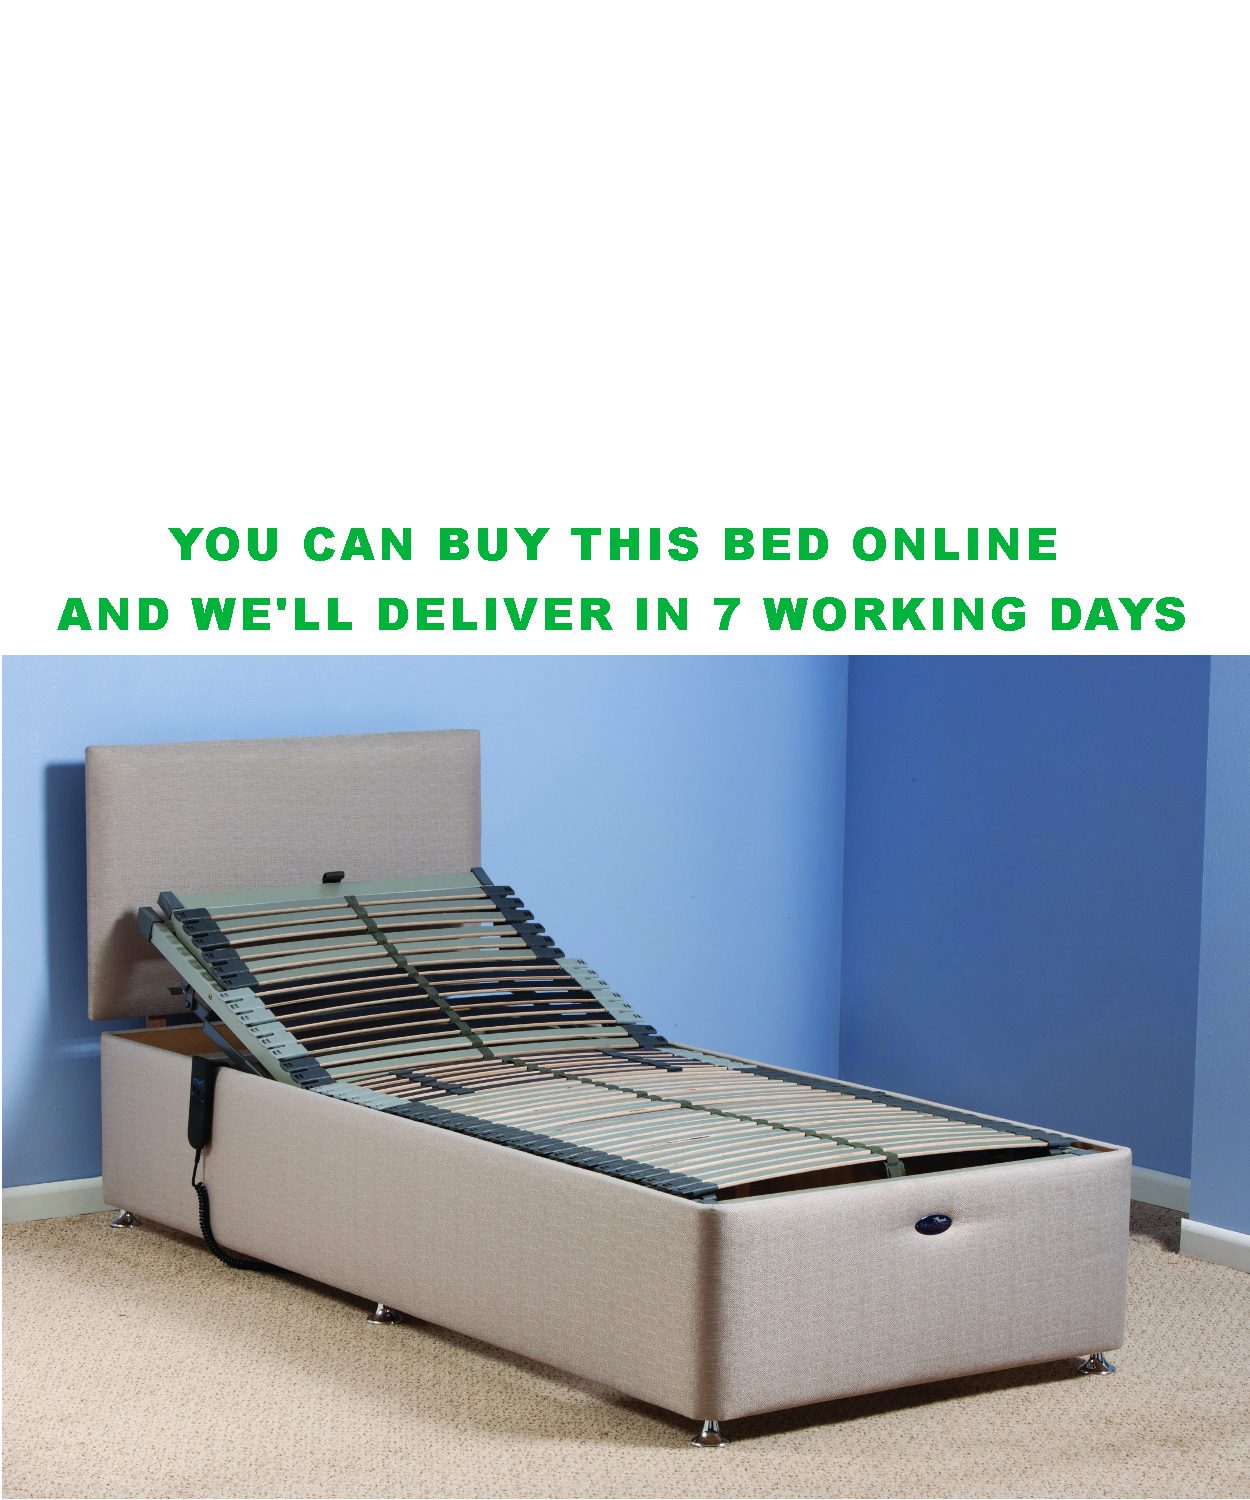 Electric Adjustable Single Bed, Electric Adjustable King Size Bed Frame